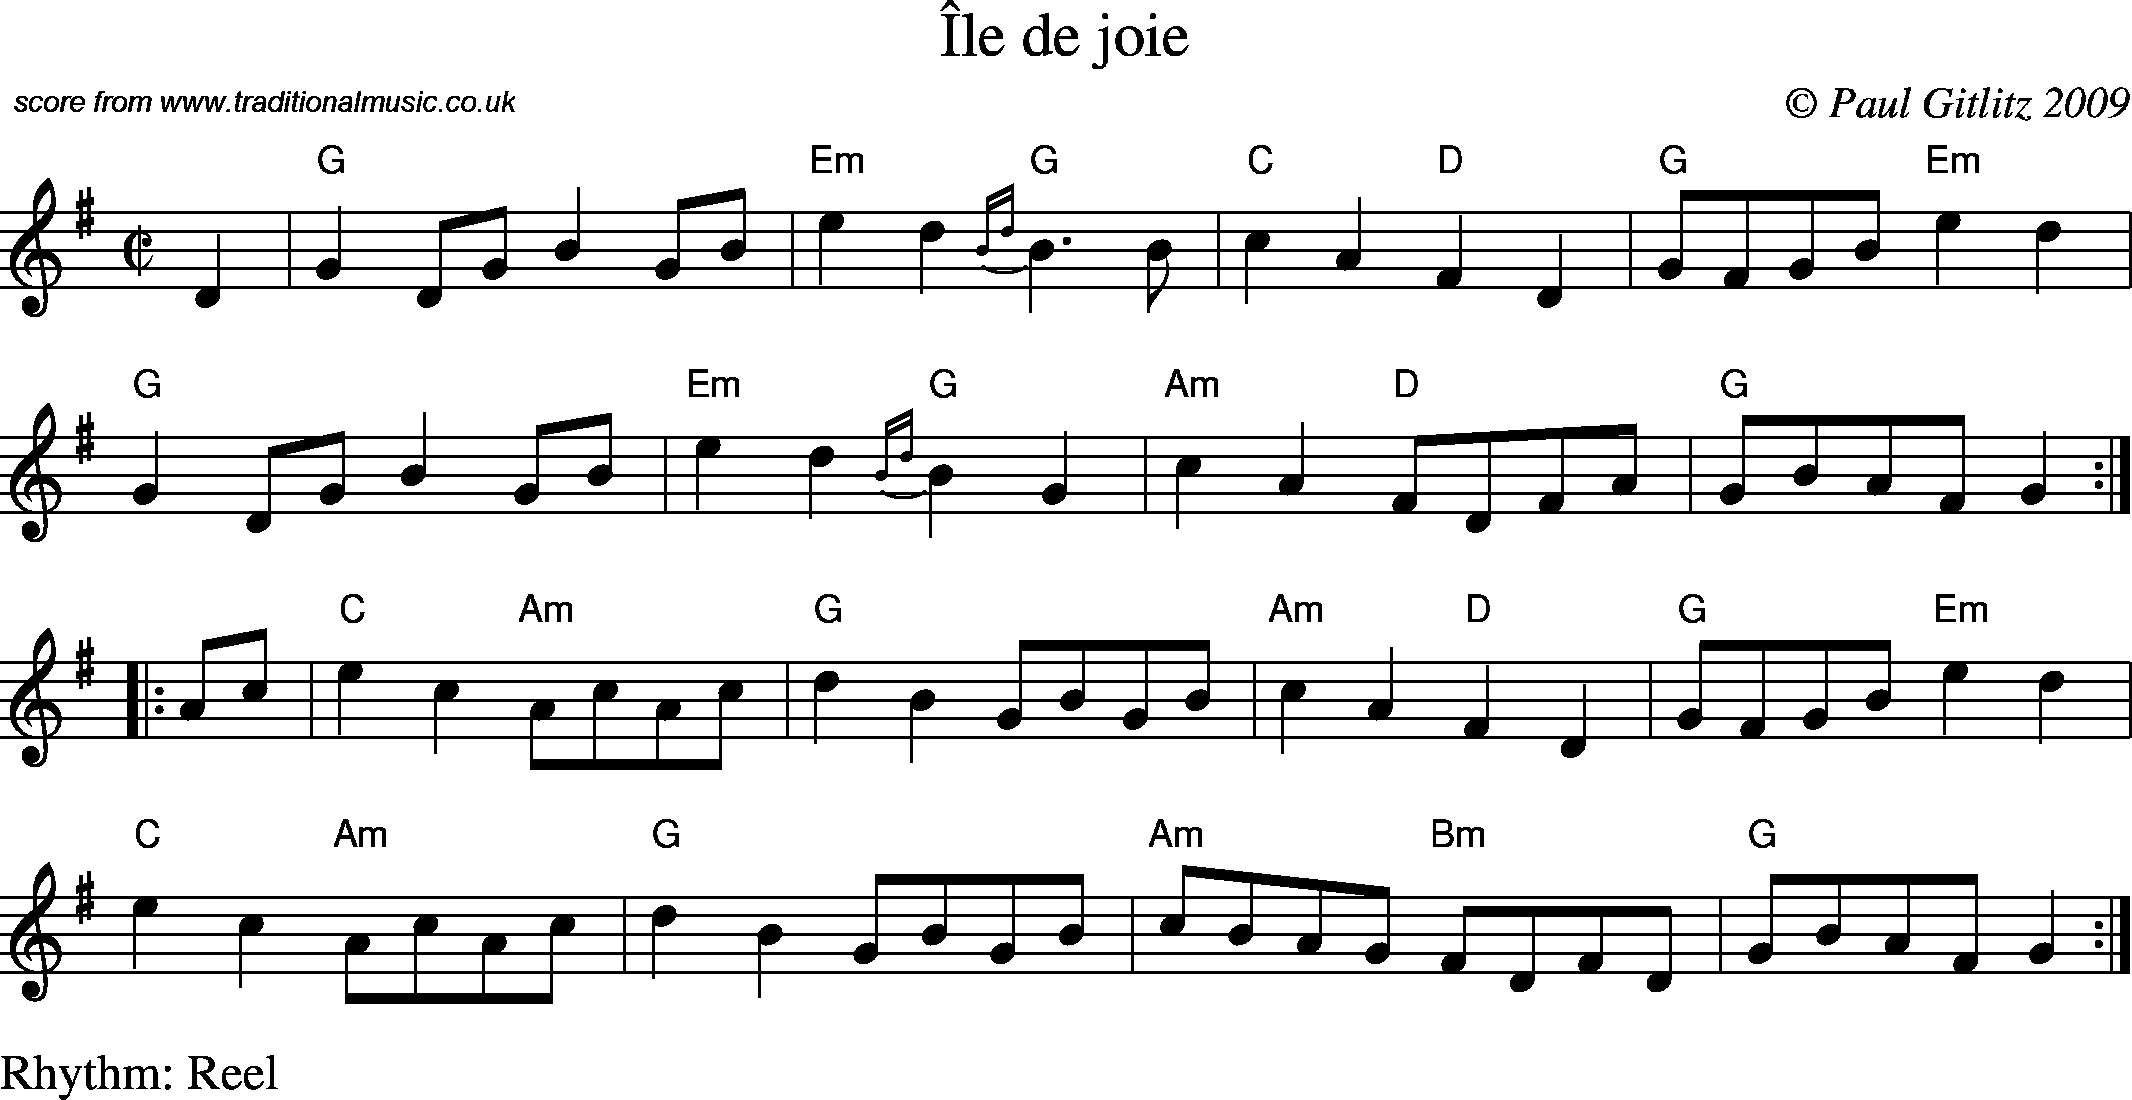 Sheet Music Score for Reel - Ile de joie